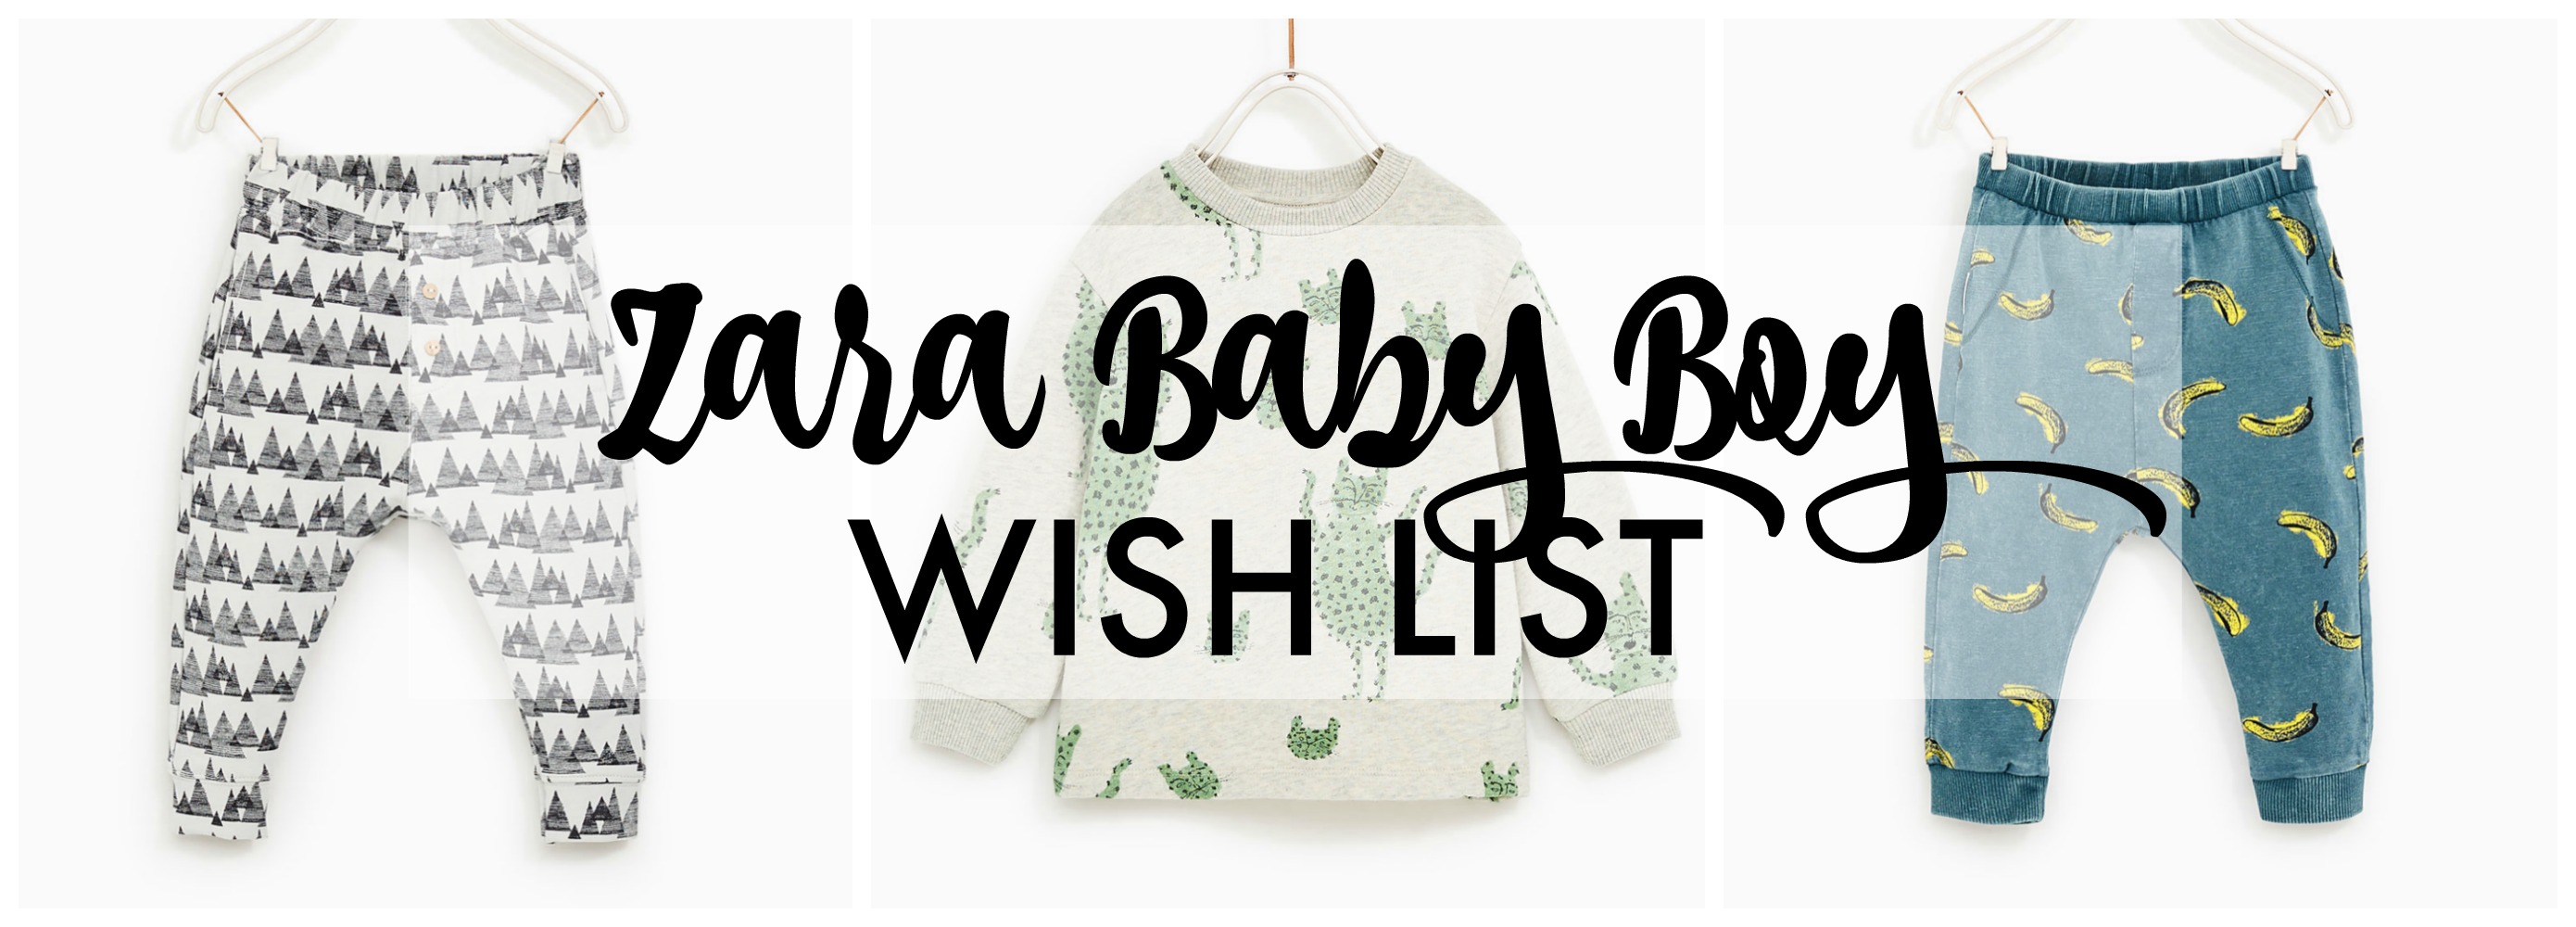 zara baby boy wish list title